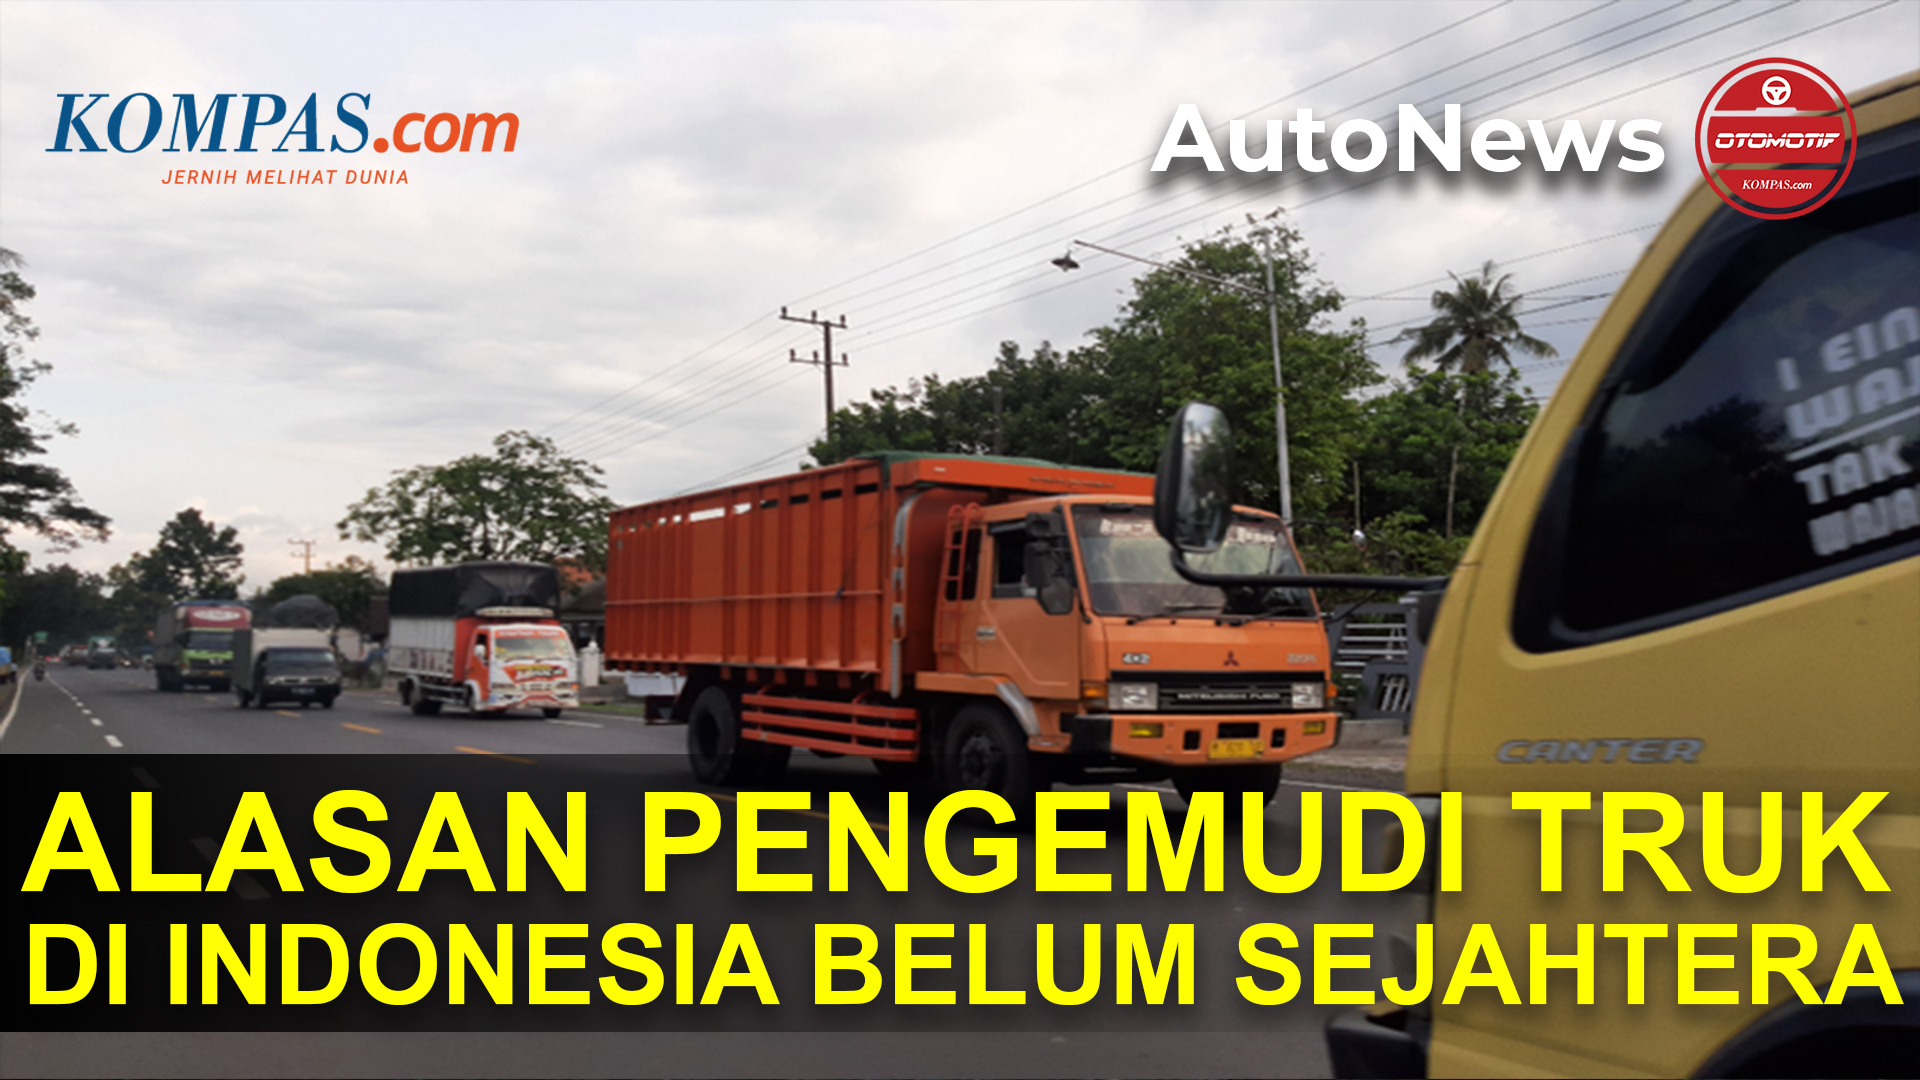 Pengemudi Angkutan Barang di Indonesia Belum Sejahtera, Tidak Ada Standar Upah